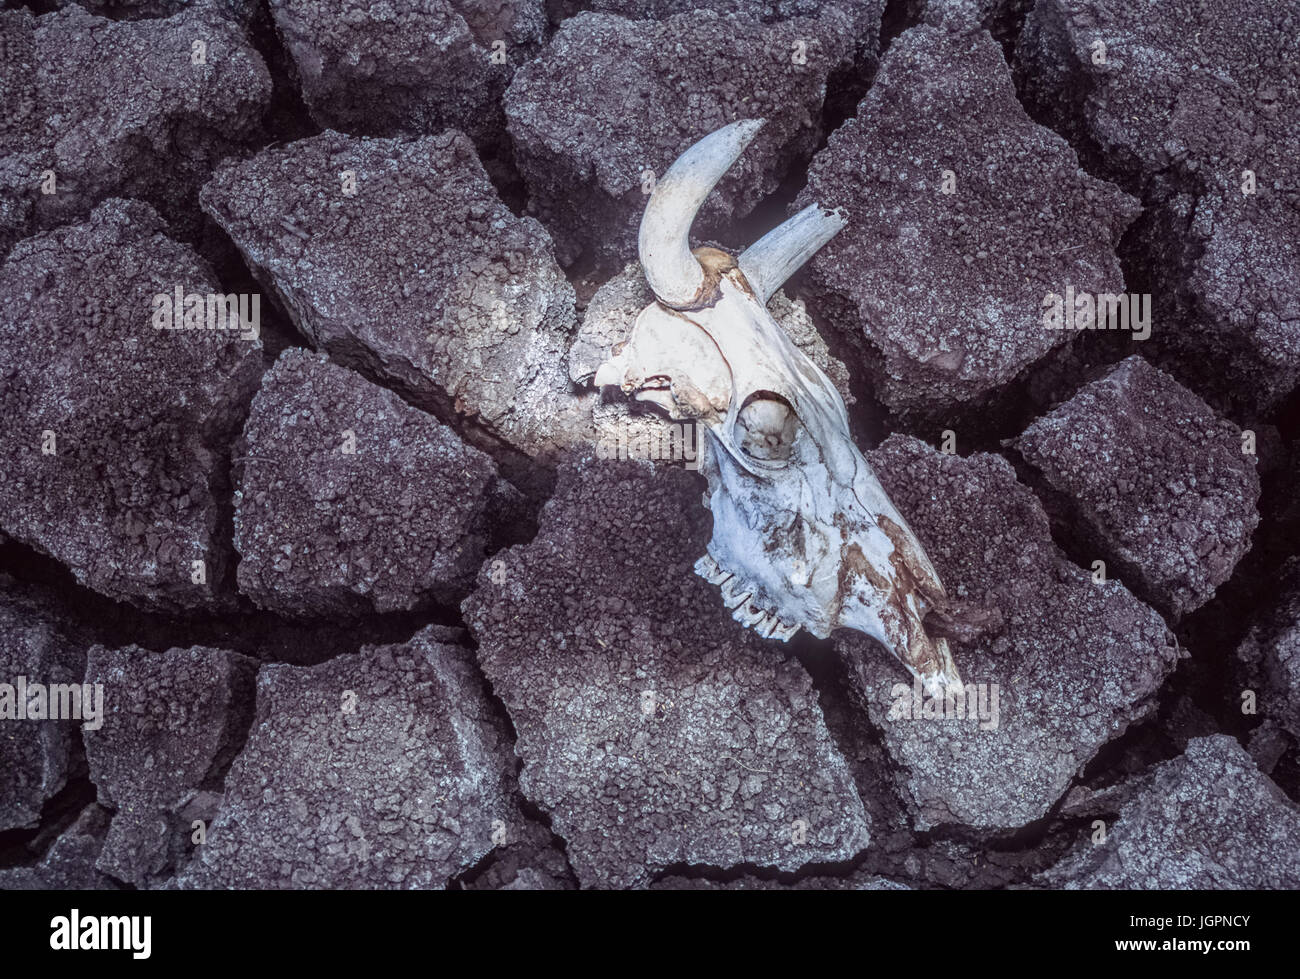 Zebù teschio di mucca, (Bos domesticus), cranio di siccità vittima giace sul fango incrinato, Gujarat, India Foto Stock